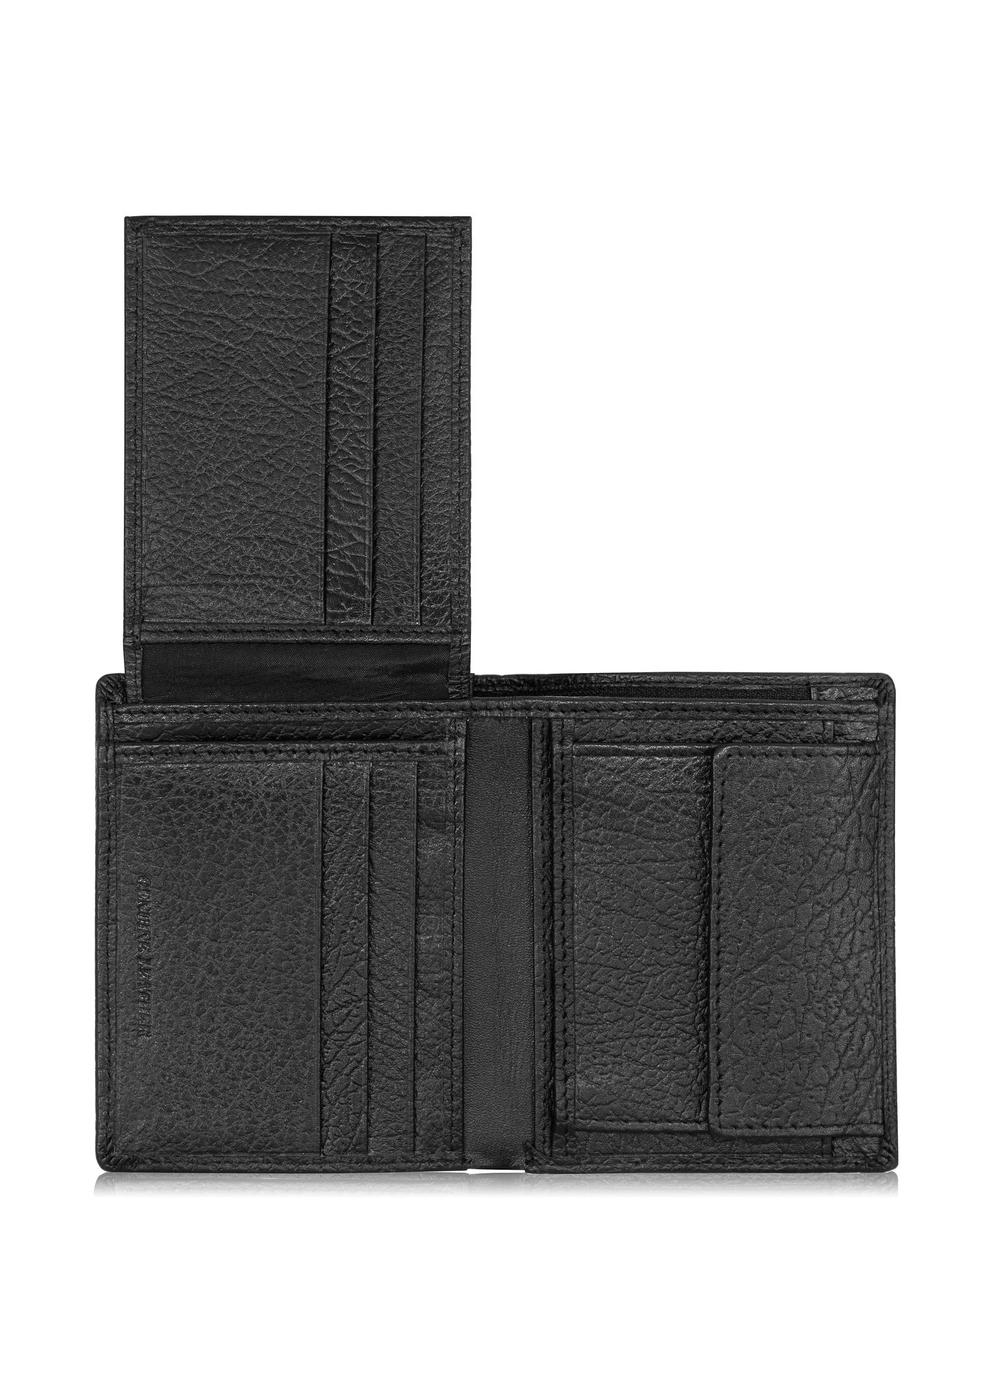 Skórzany groszkowany portfel męski PORMS-0535-99(W24)